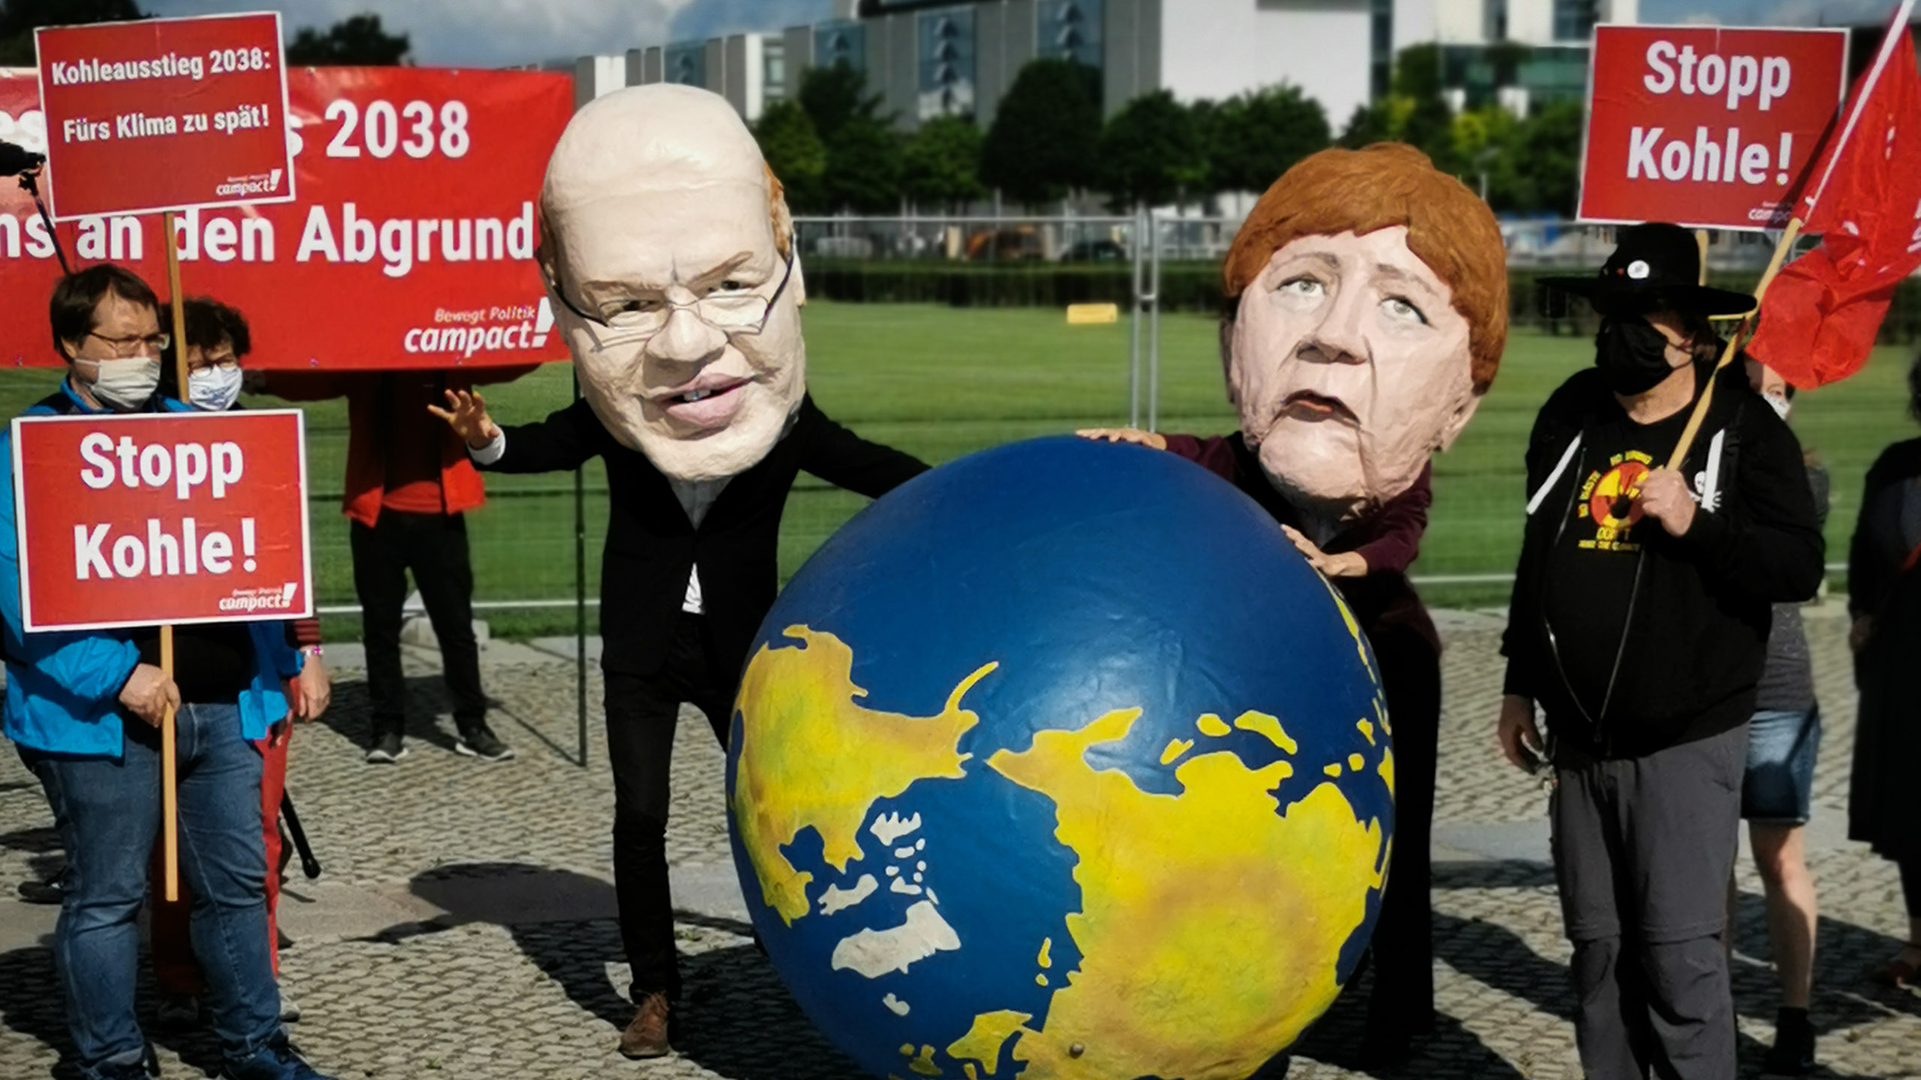 Zwei Menschen stehen als Peter Altmaier und Angela Merkelt verkleidet mit einem aufblasbaren Globus auf einer Demonstration.